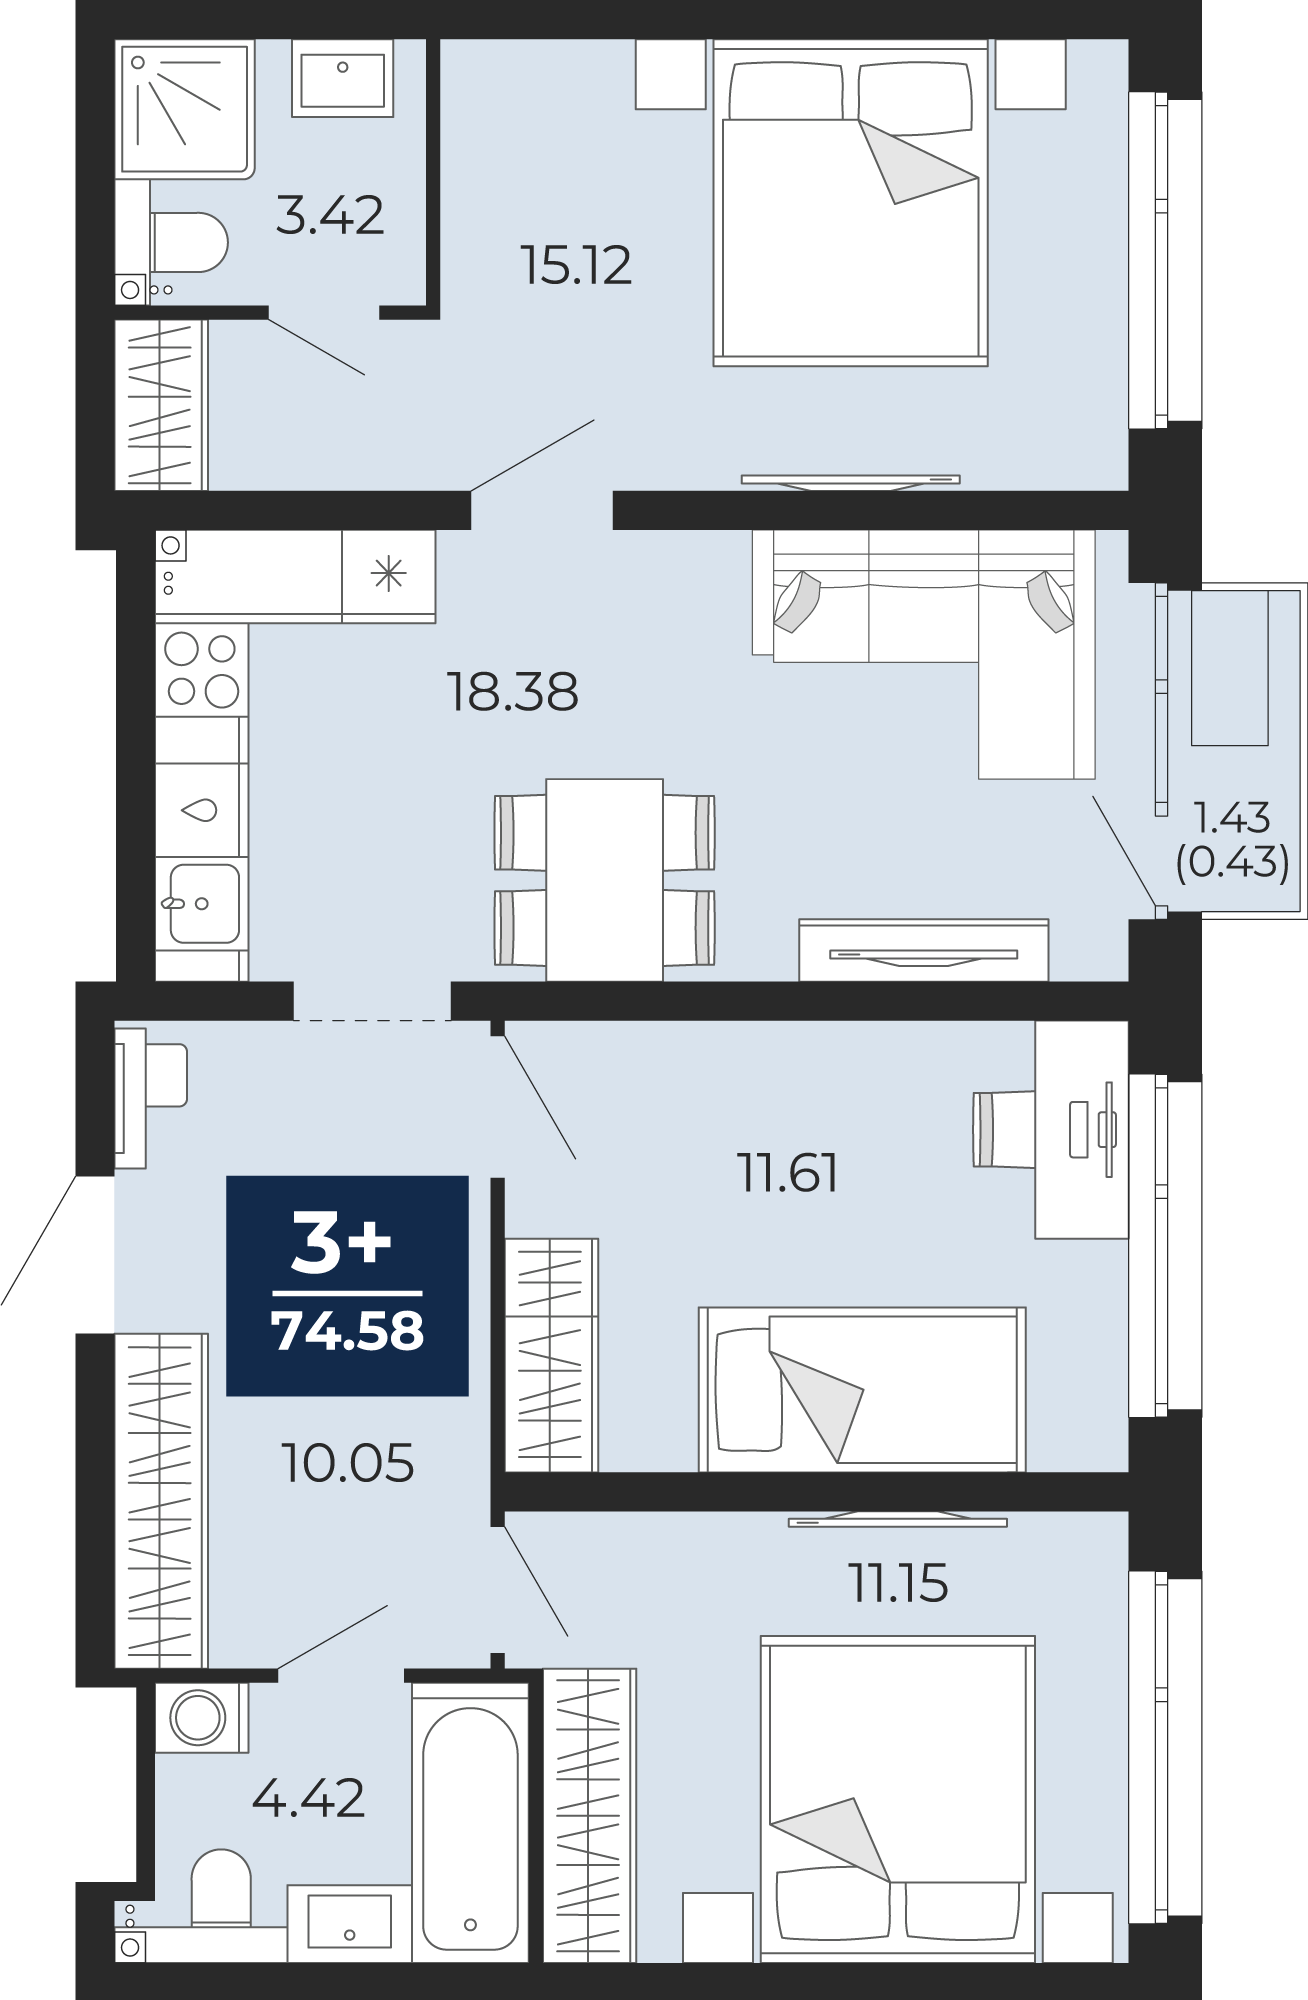 Квартира № 341, 3-комнатная, 74.58 кв. м, 4 этаж